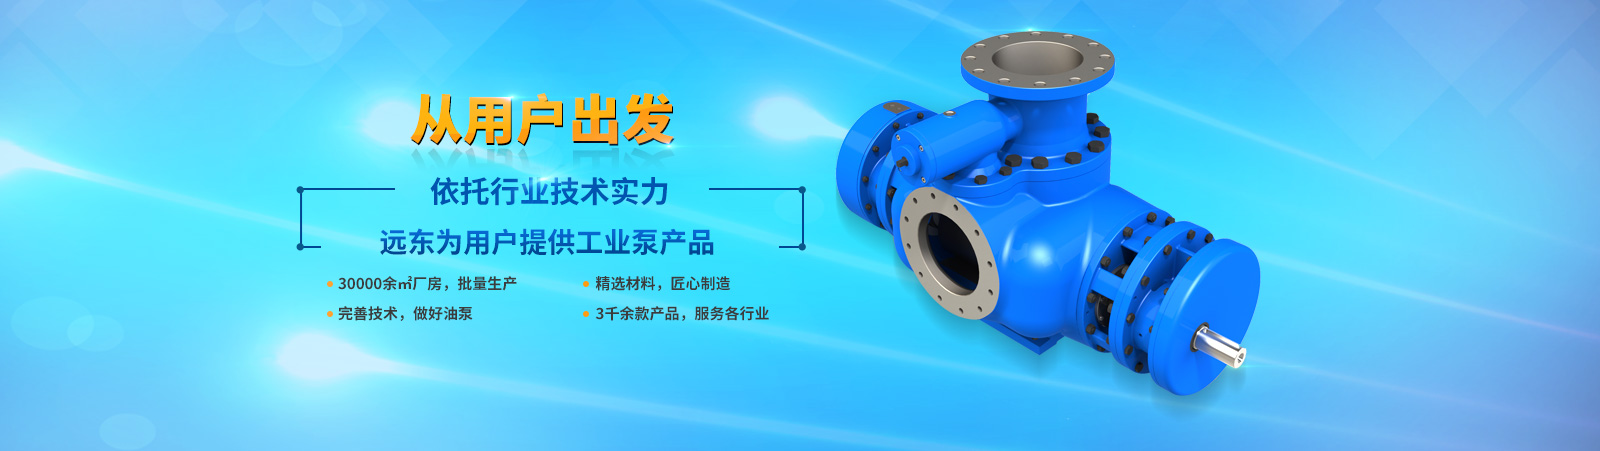 远东泵业——为用户提供优质的油泵产品